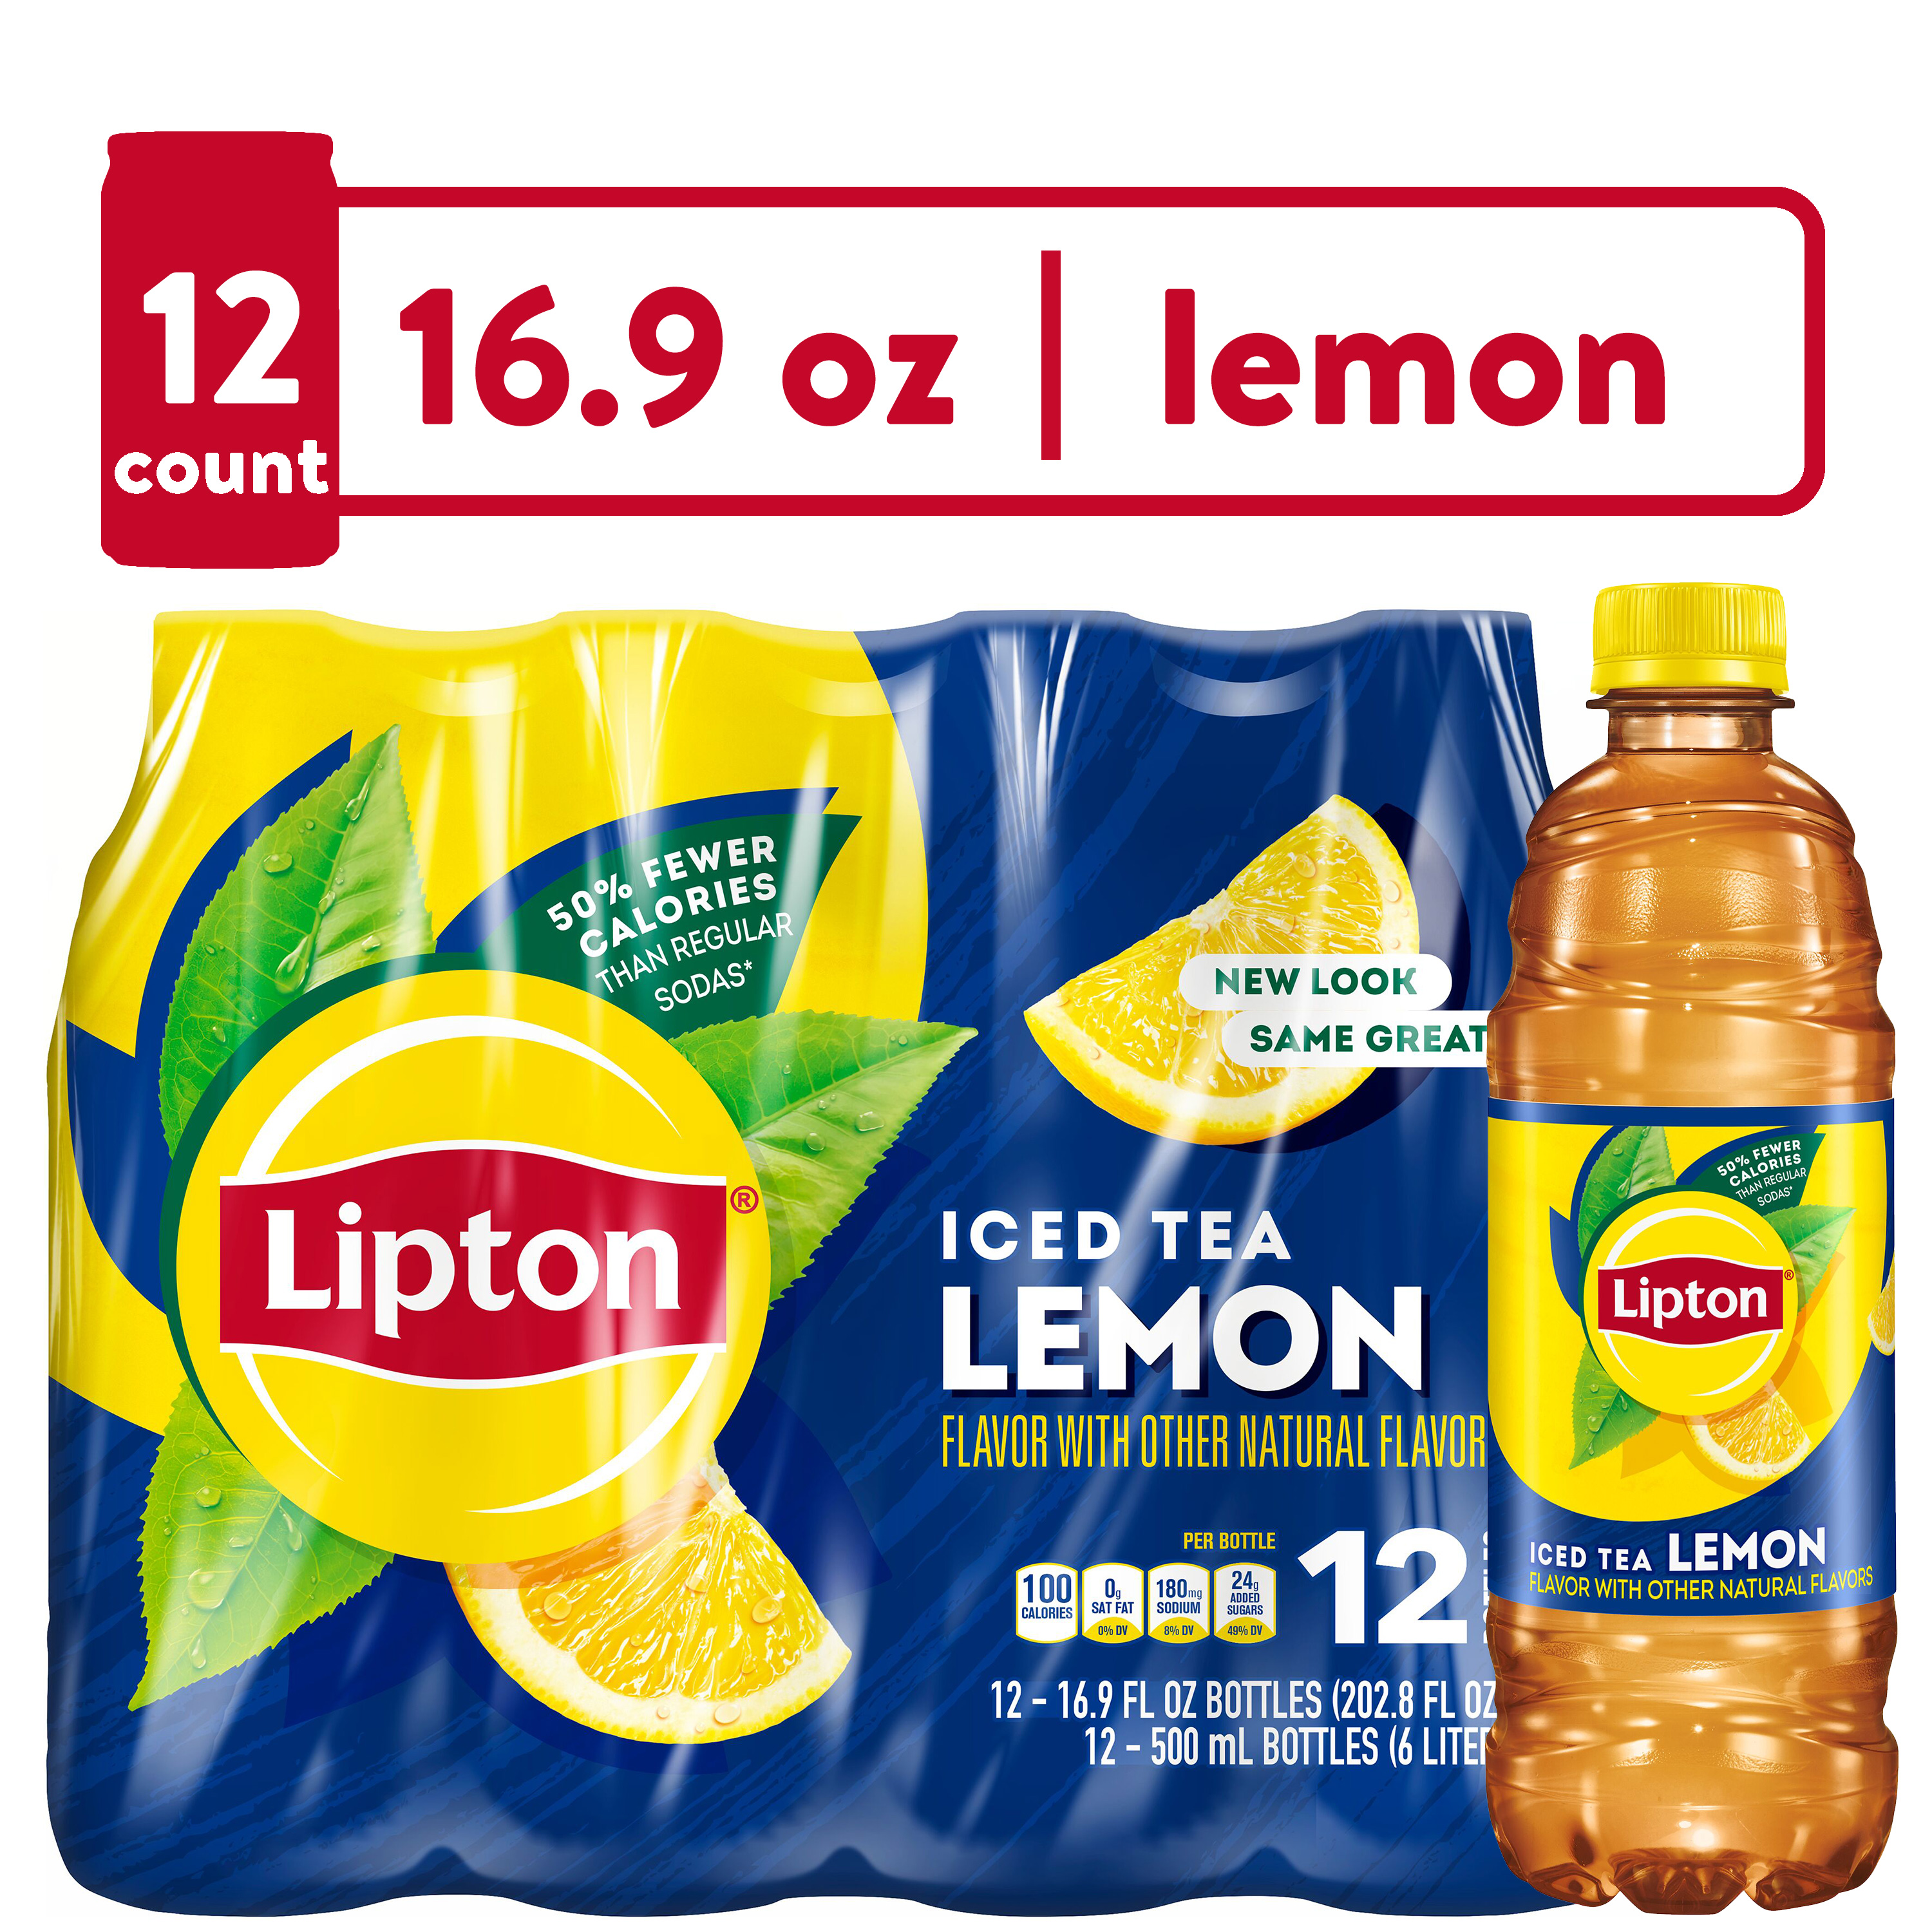 Lipton Lemon Iced Tea, 16.9 fl oz, 12 Pack Bottles - image 1 of 6